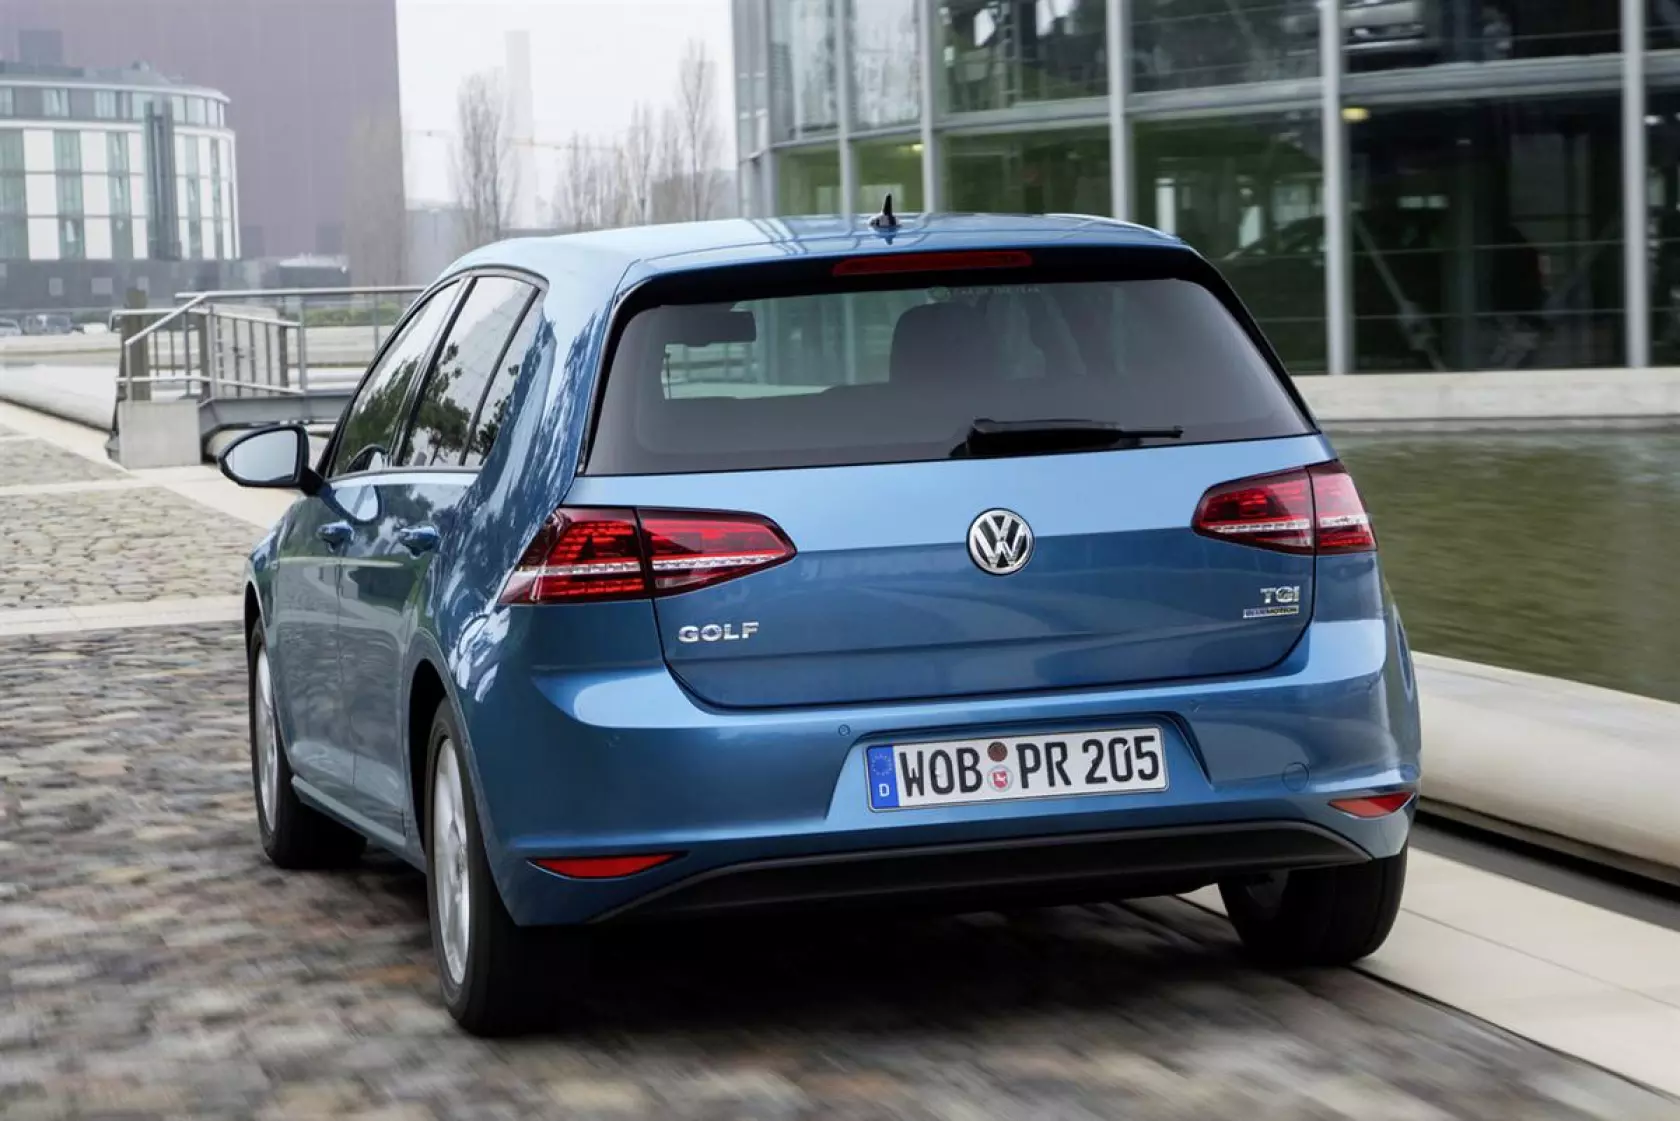 Onderscheiden Extreem belangrijk Achtervoegsel Volkswagen Group's CNG cars | gazeo.com